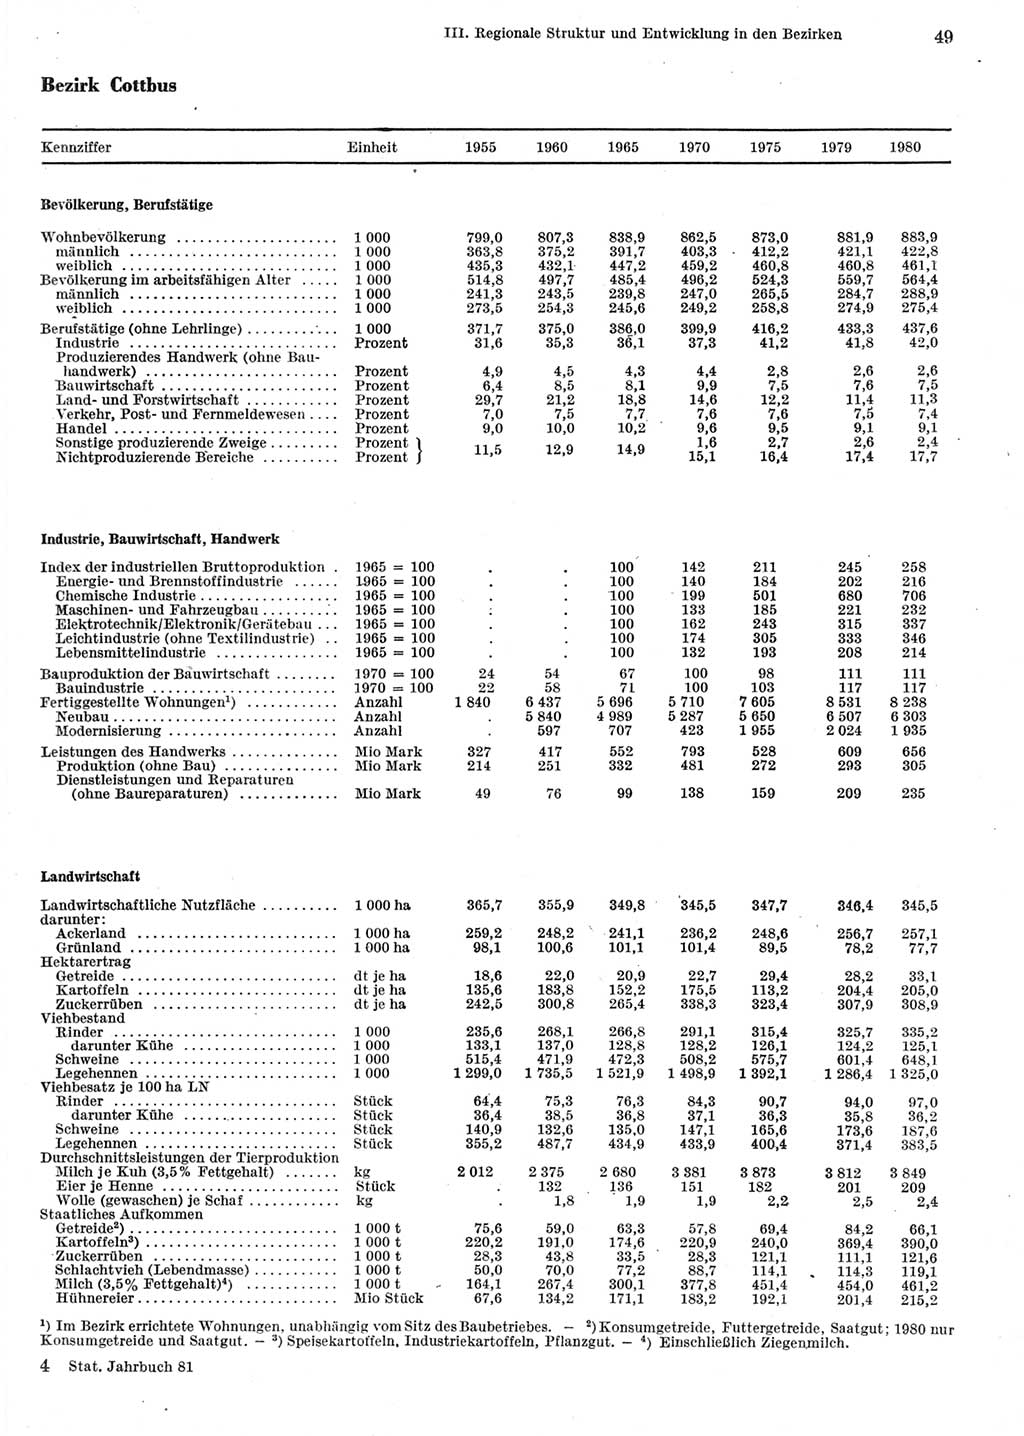 Statistisches Jahrbuch der Deutschen Demokratischen Republik (DDR) 1981, Seite 49 (Stat. Jb. DDR 1981, S. 49)